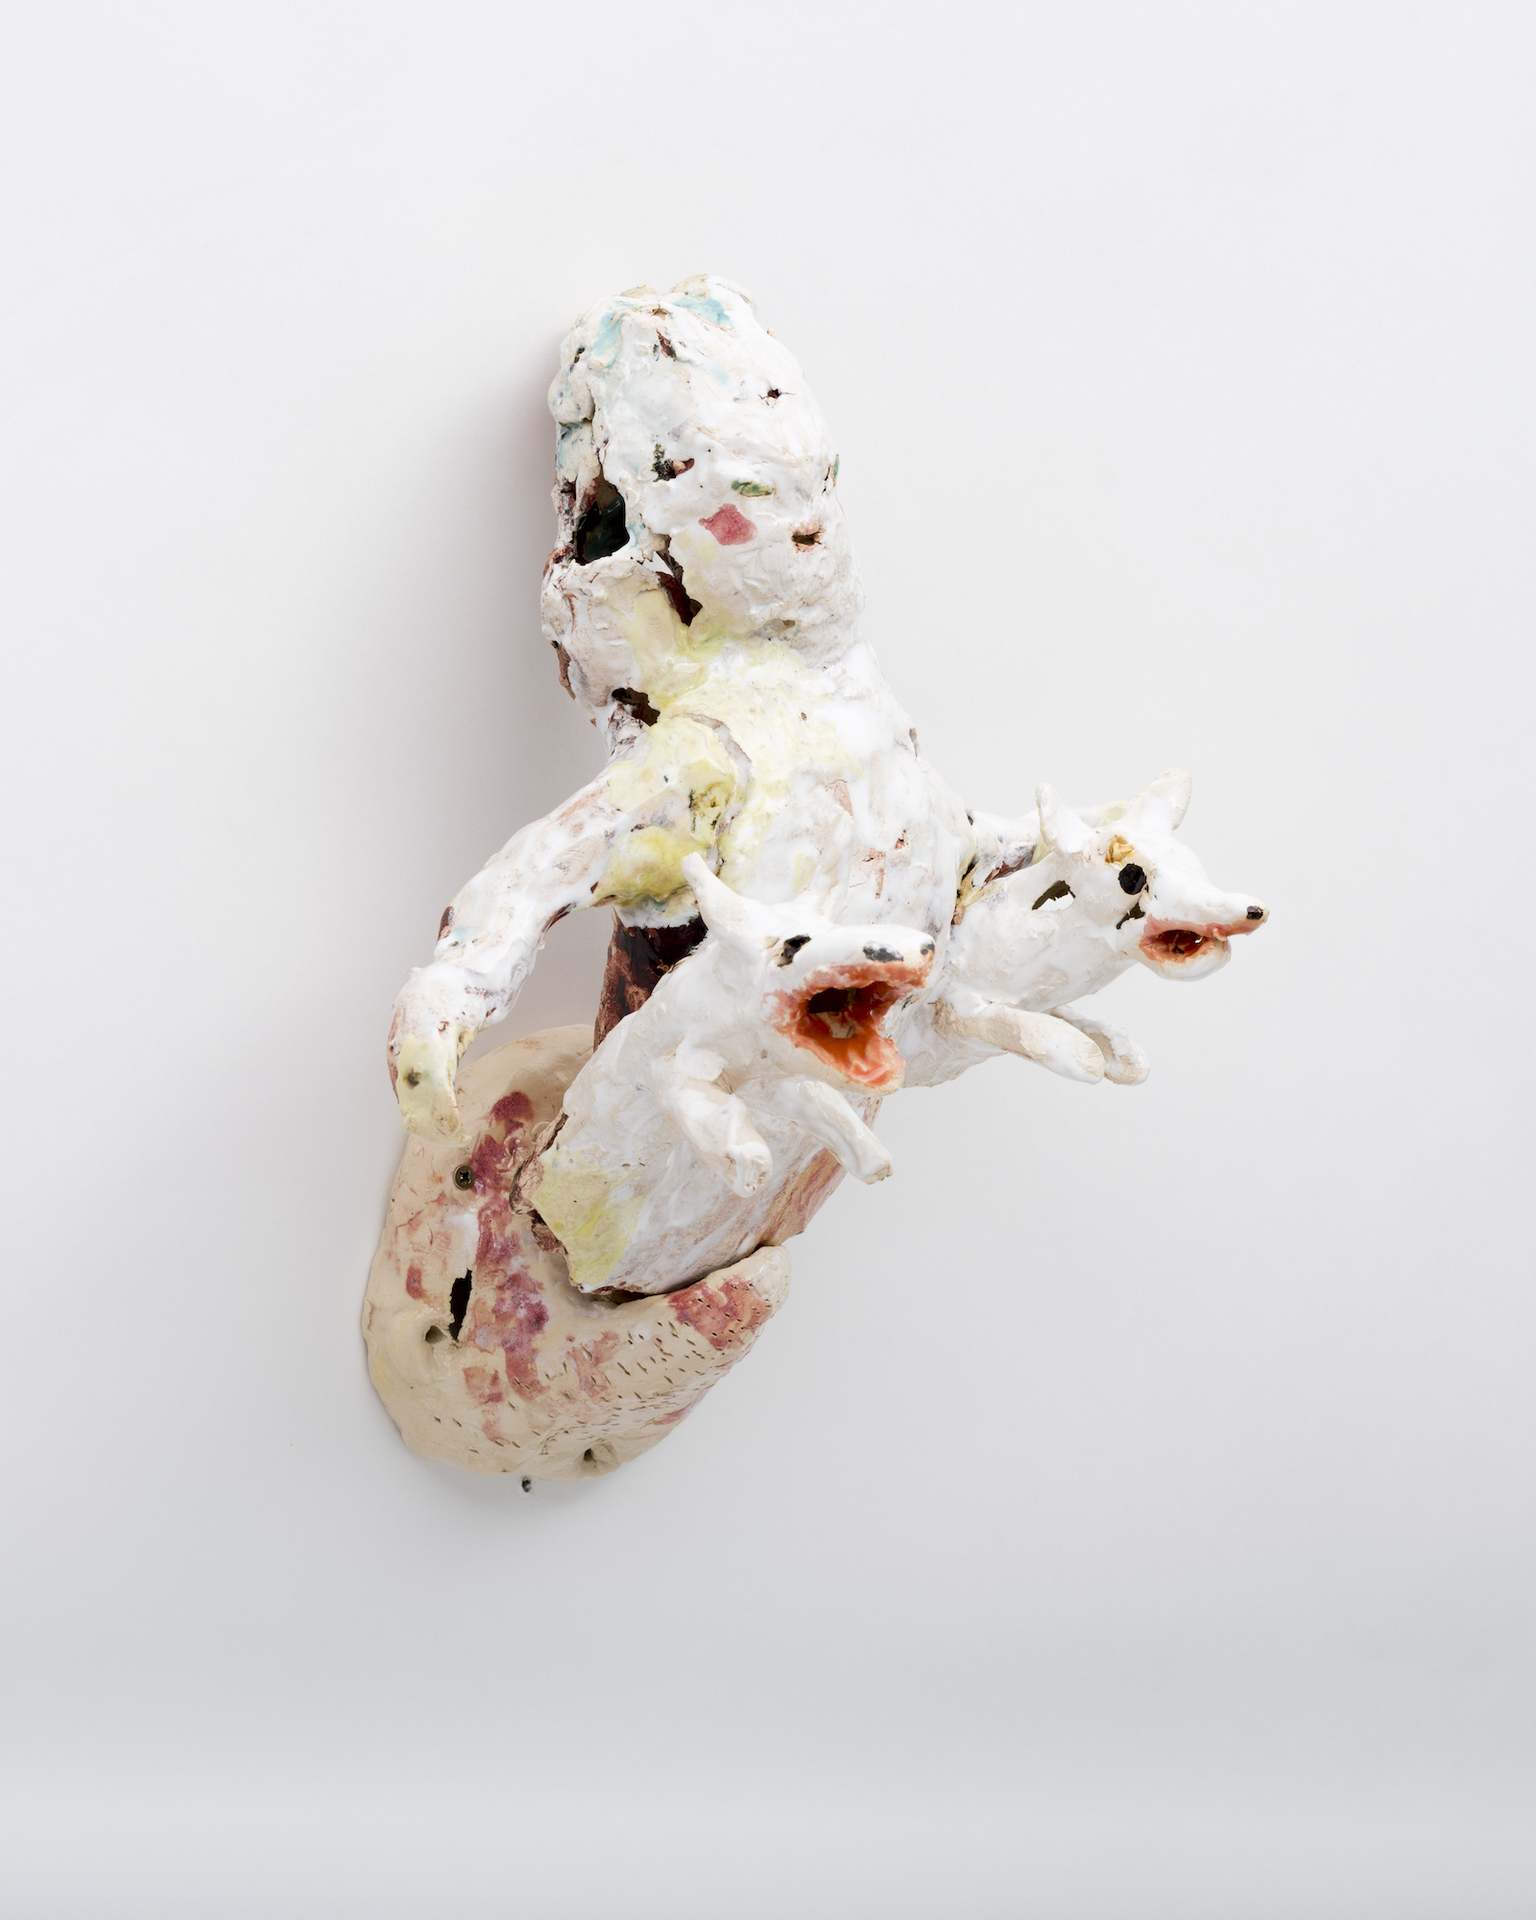 Asana Fujikawa, a child, 2021, Ceramics, 29 x 27 x 20 cm